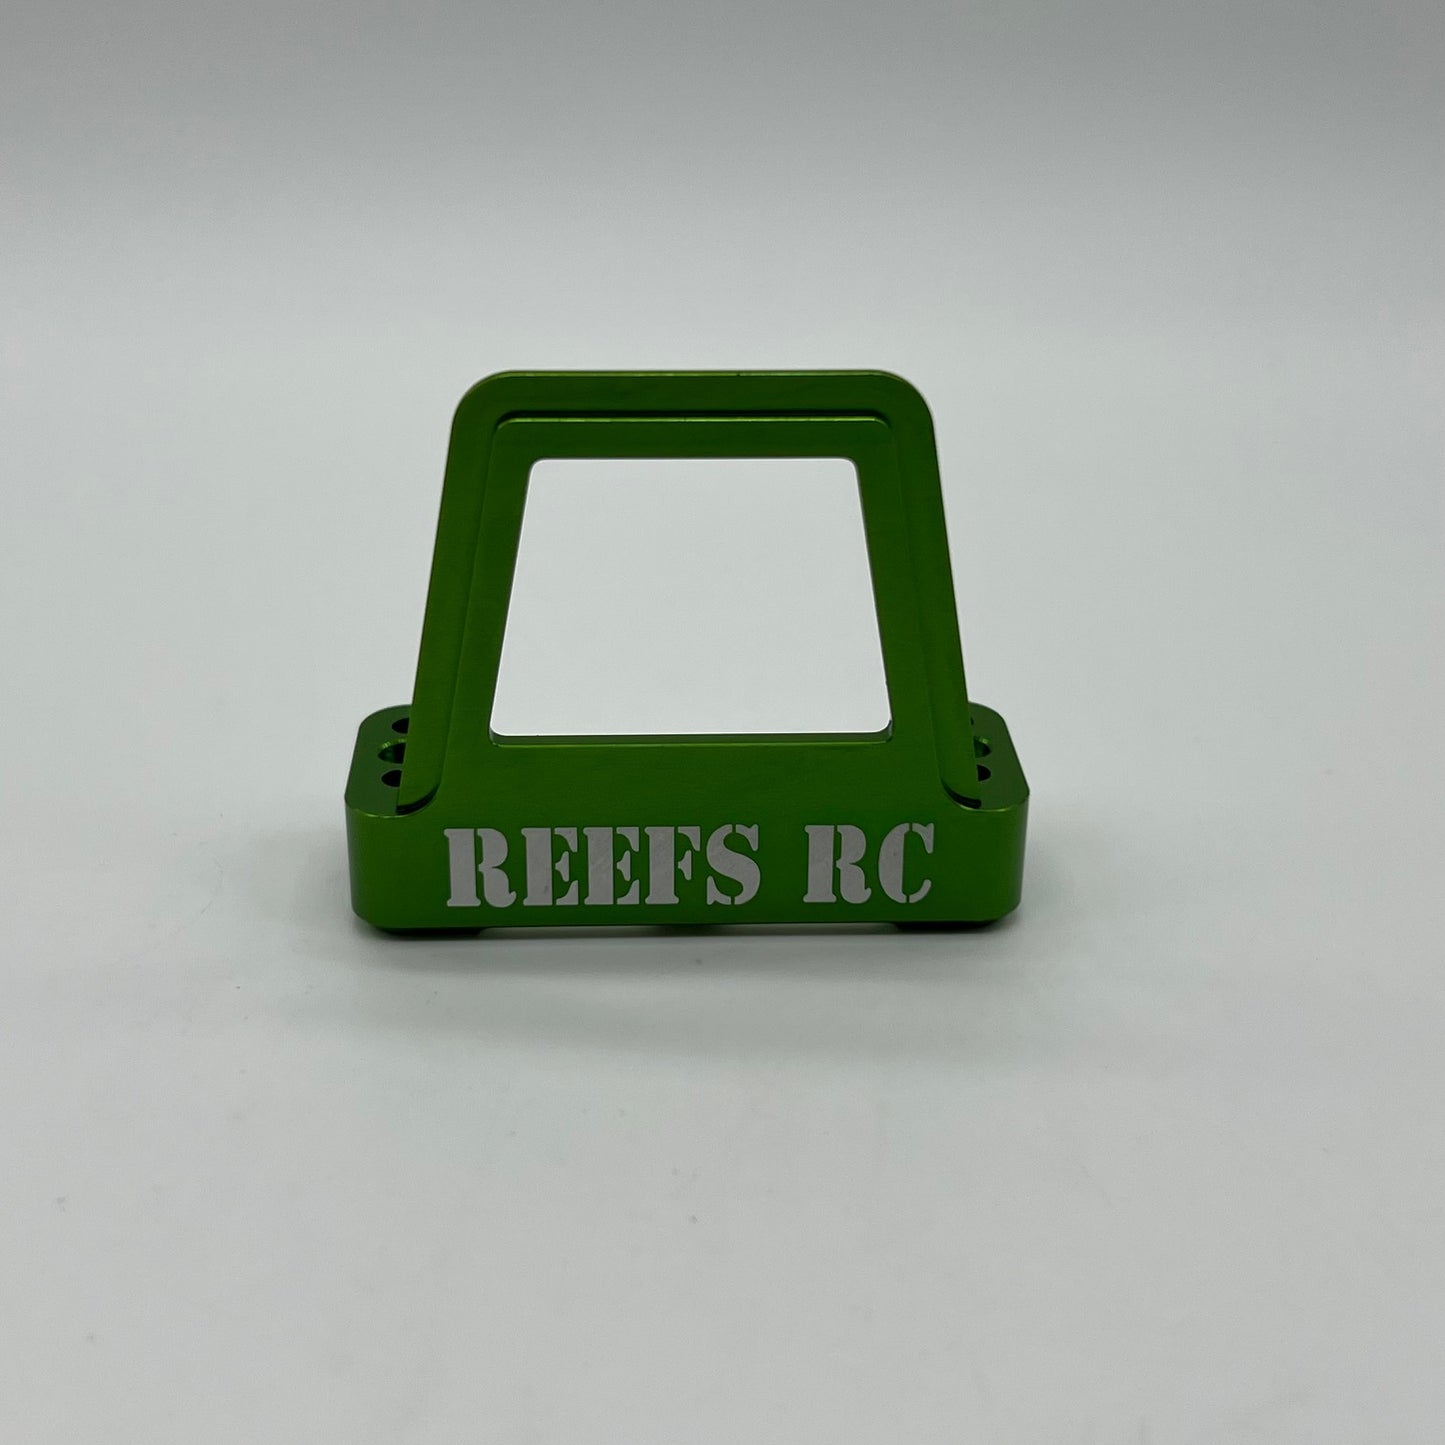 REEFS Servo Shield (Green)